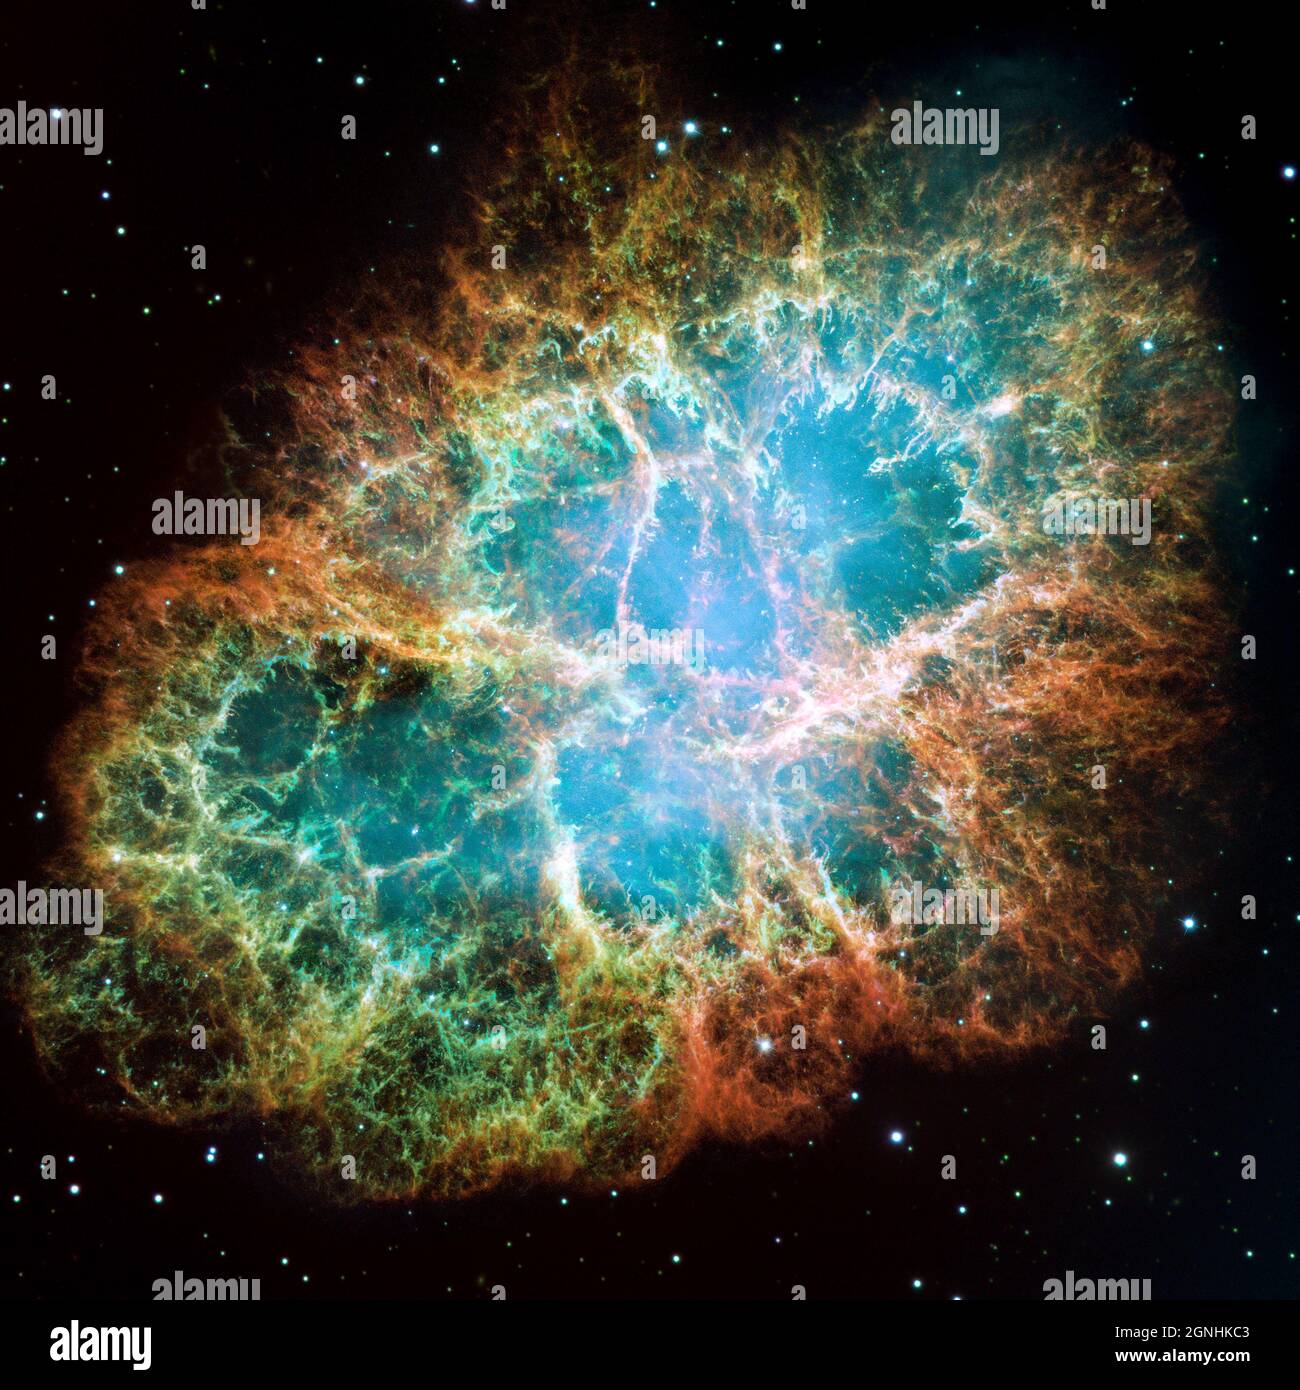 Il Granchio Nebula, un residuo di supernova in espansione di sei anni luce. JBlue nei filamenti nella parte esterna della nebulosa rappresenta ossigeno neutro, verde è zolfo ionizzato singolarmente, e rosso indica ossigeno doppiamente ionizzato. . Fonte immagine NASA/ESA Hubble Space Telescope Foto Stock